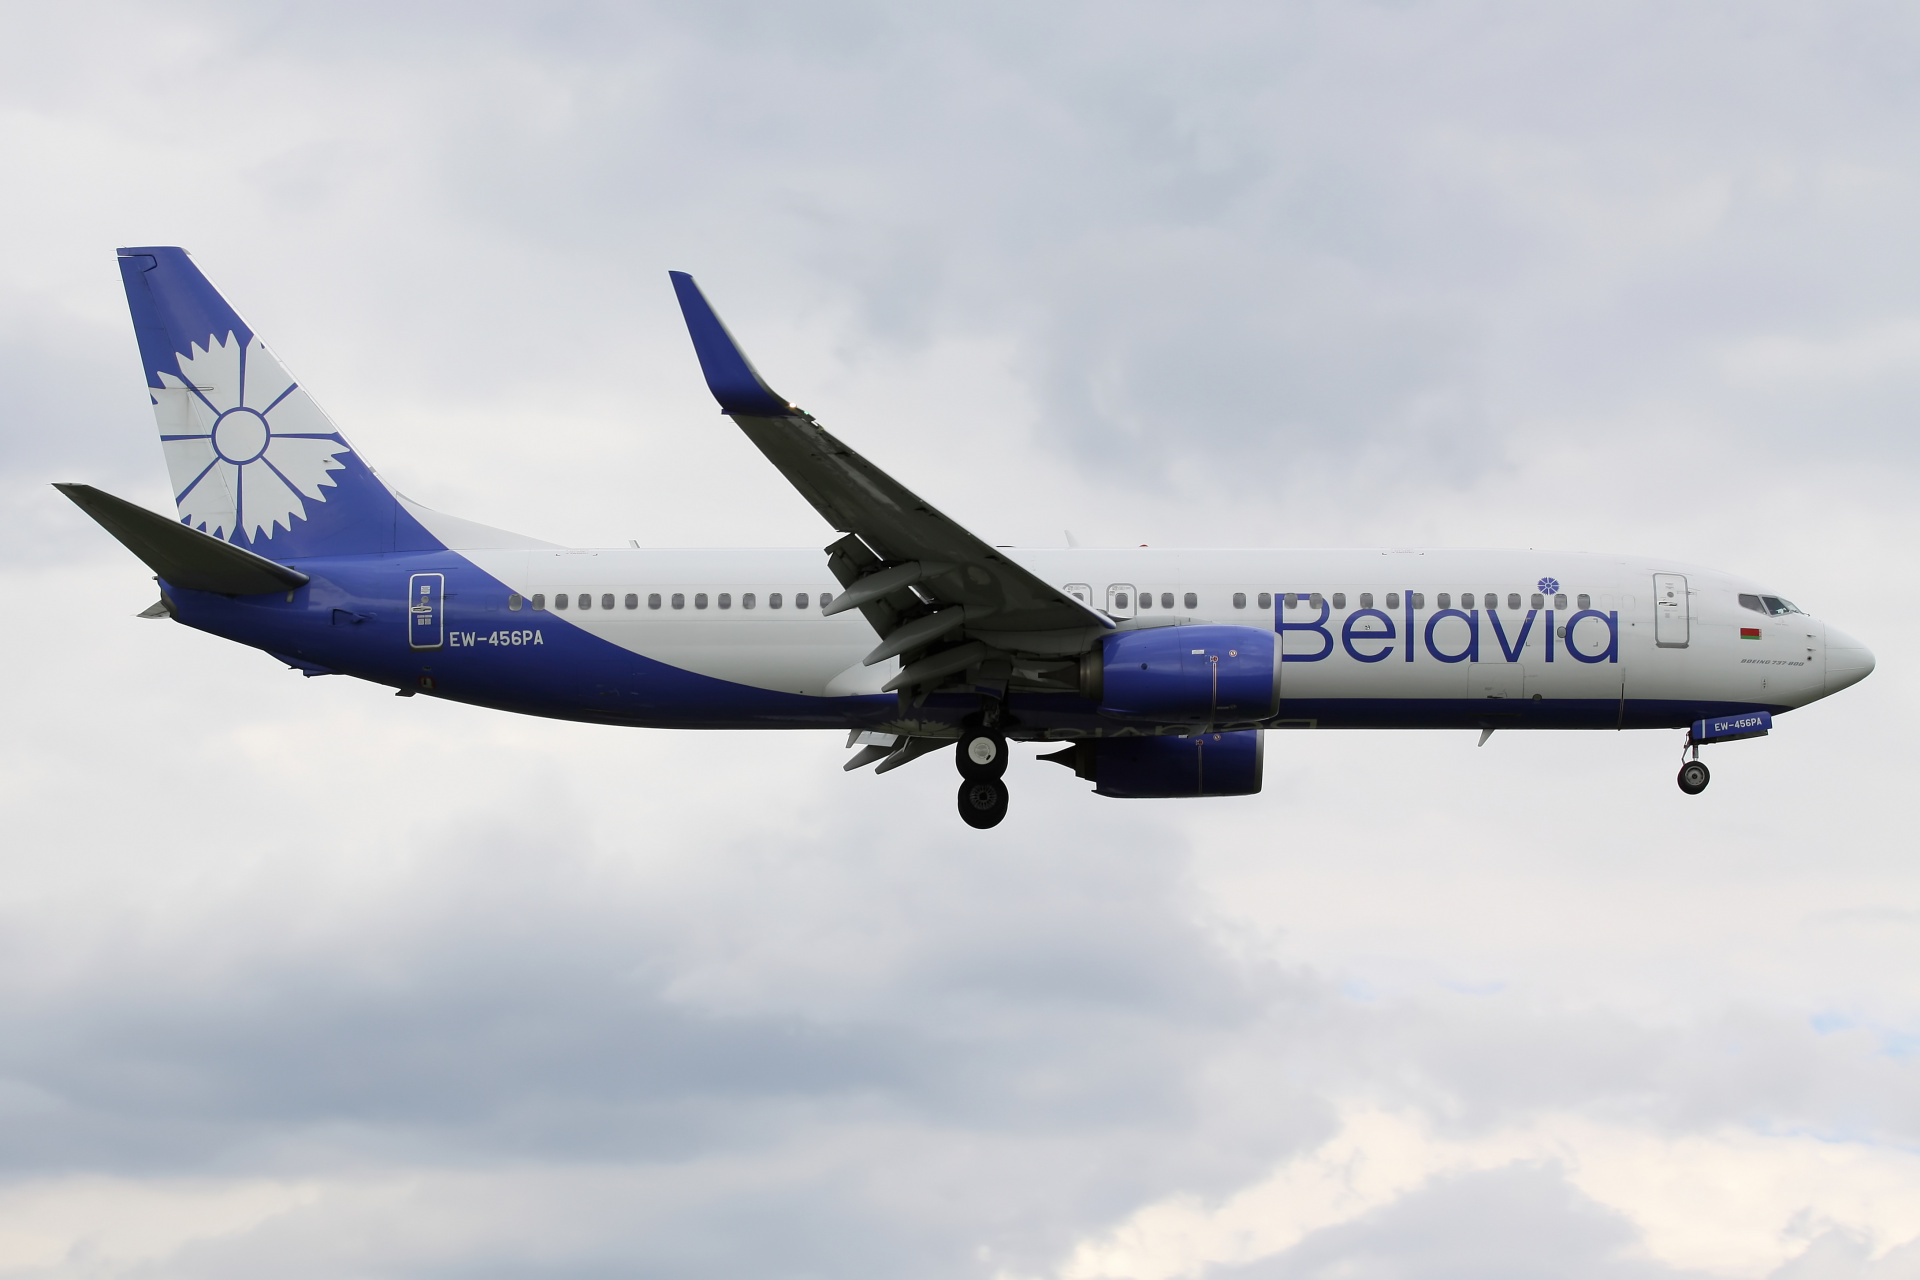 EW-456PA, Belavia (Aircraft » EPWA Spotting » Boeing 737-800)